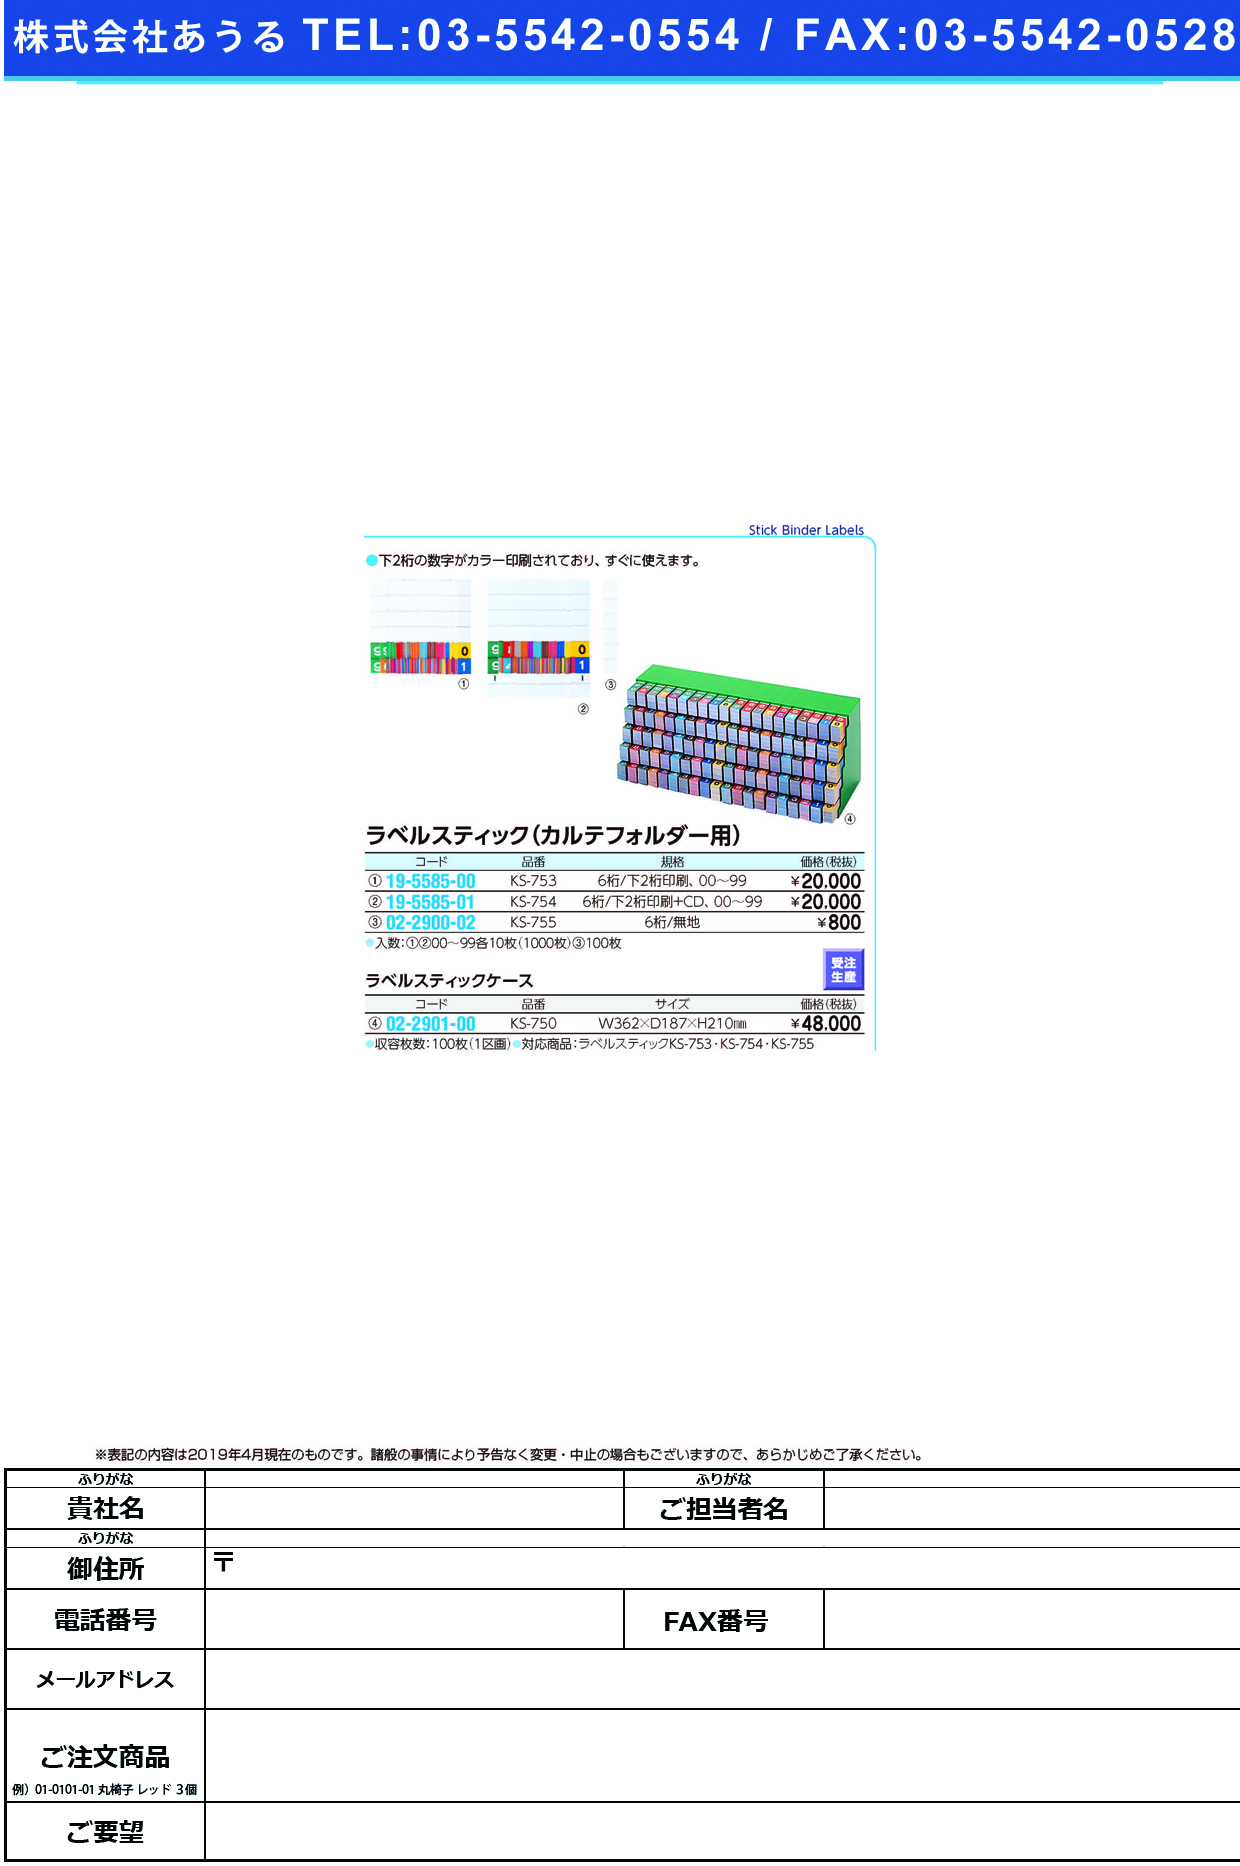 (02-2901-00)ラベルスティックケース KS-750 KS750(ケルン)【1個単位】【2019年カタログ商品】